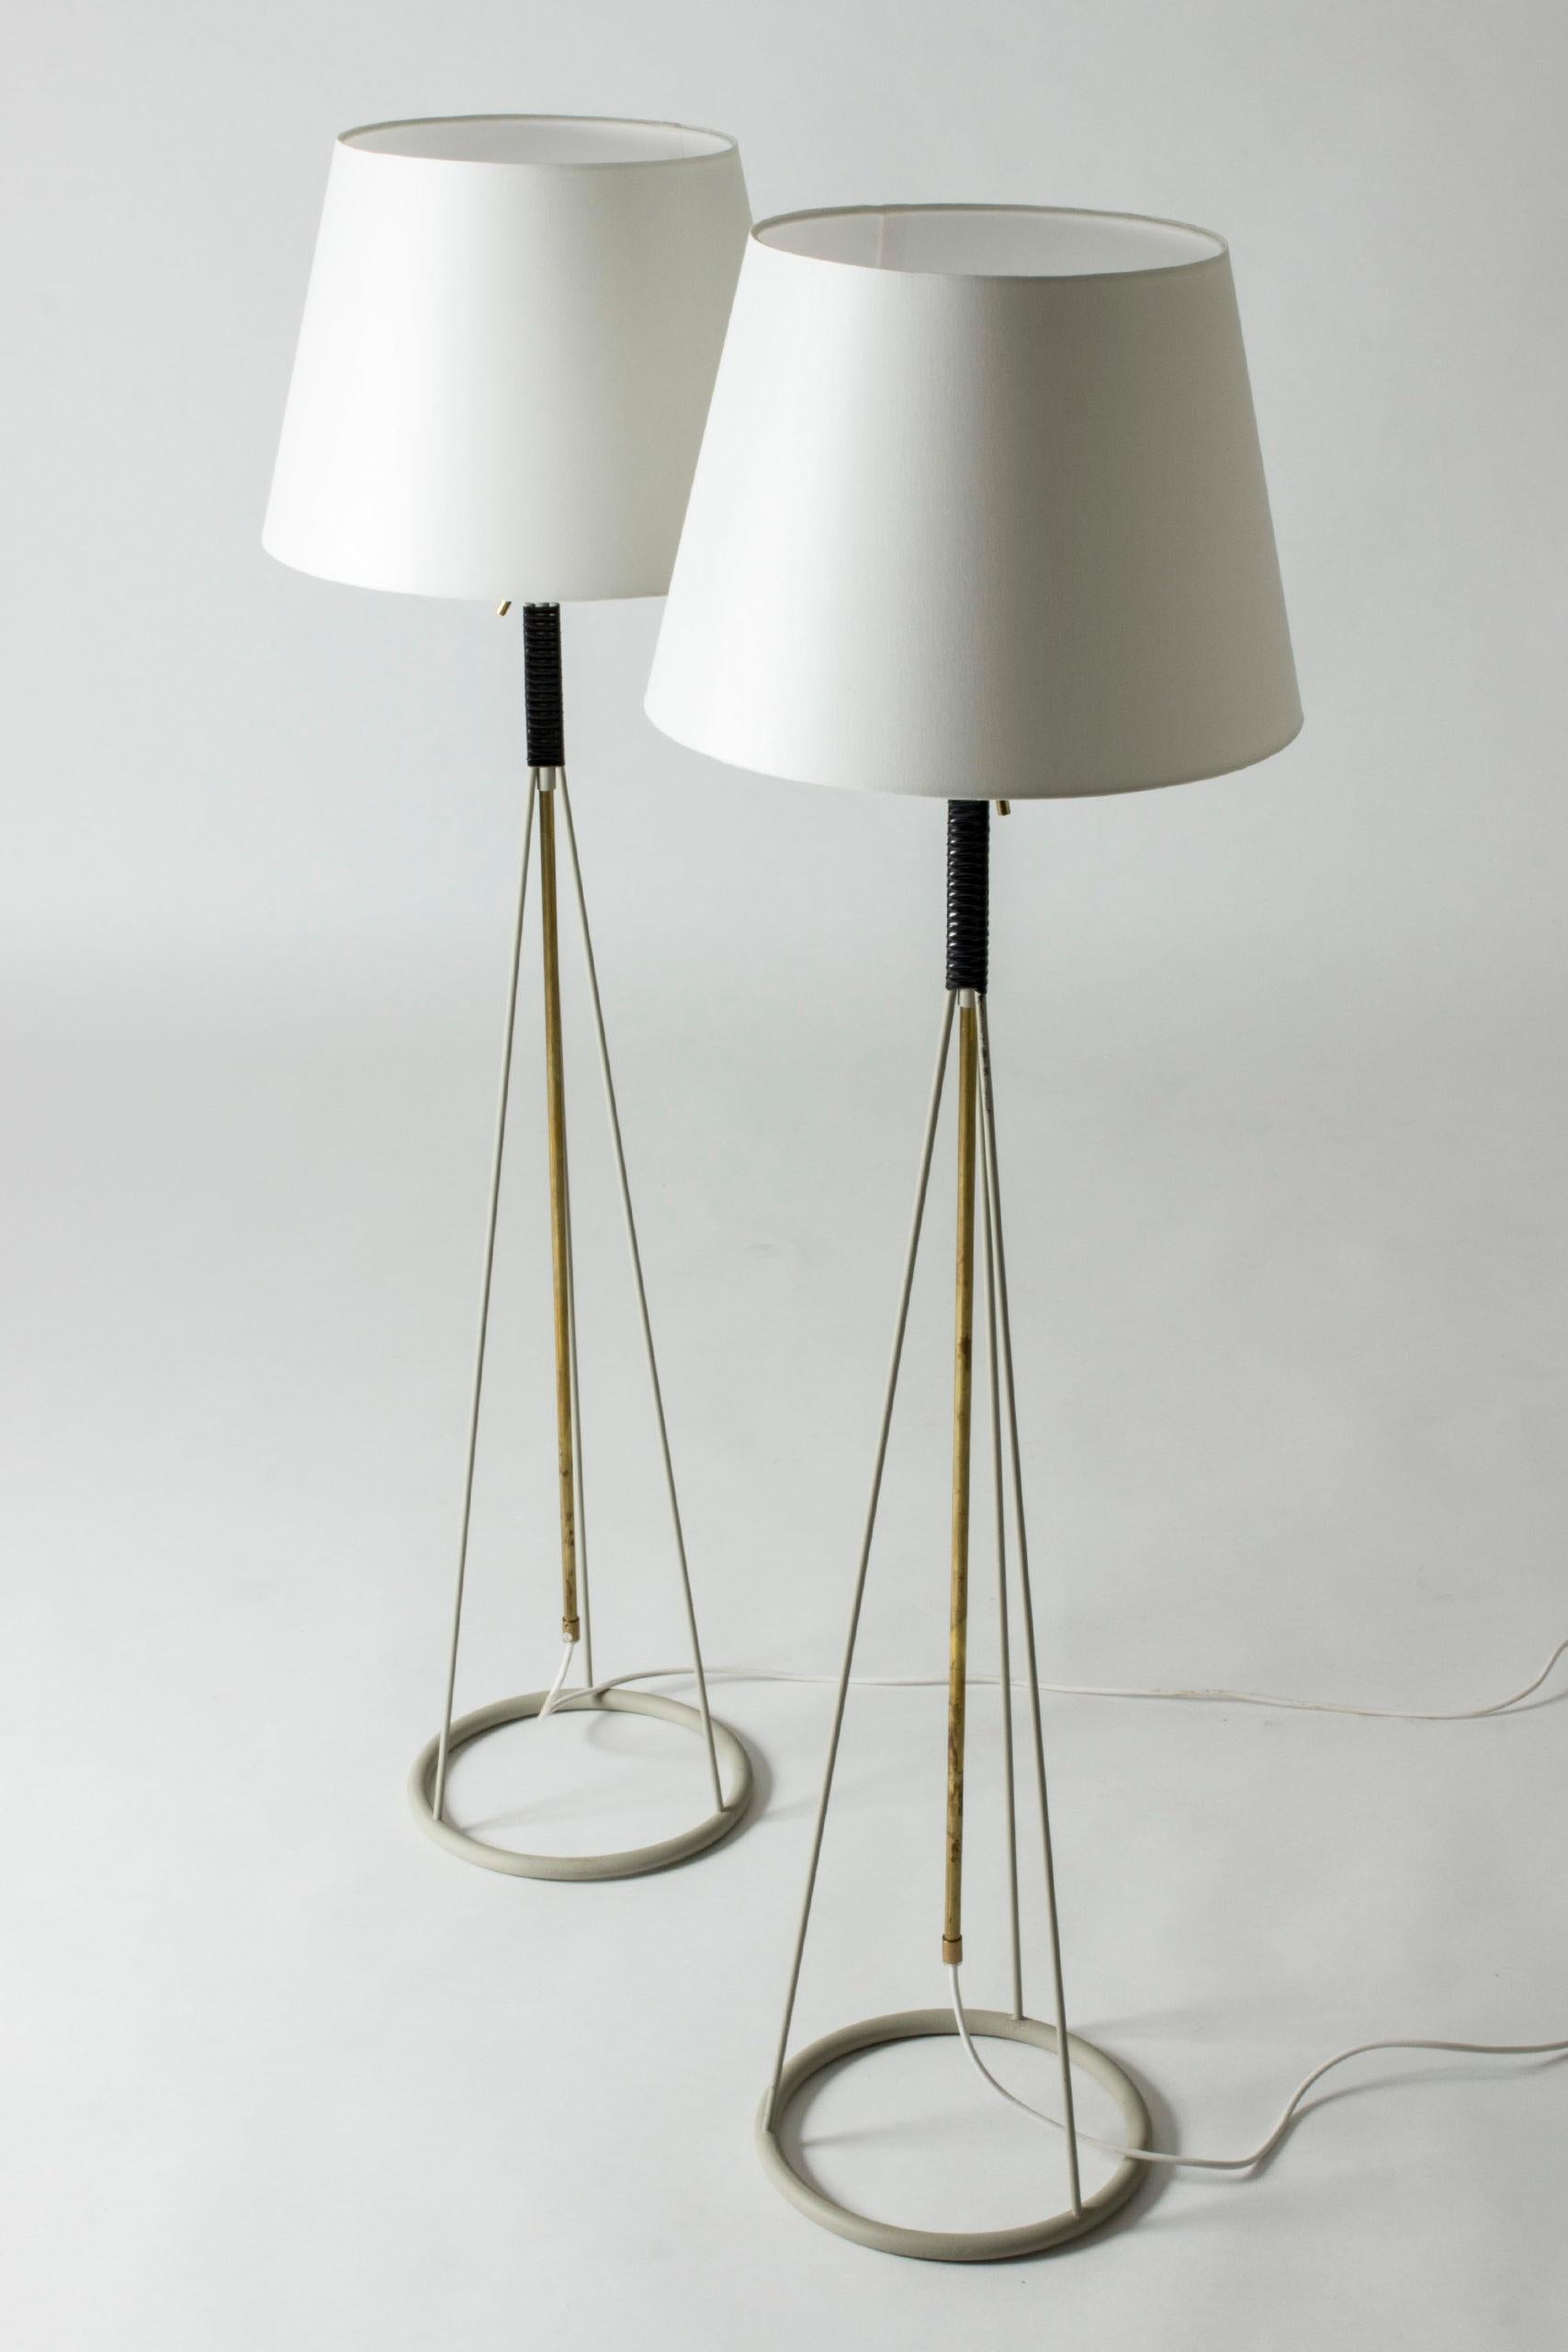 Suédois Paire de lampadaires d'Eje Ahlgren pour Luco, design des années 1950 en vente